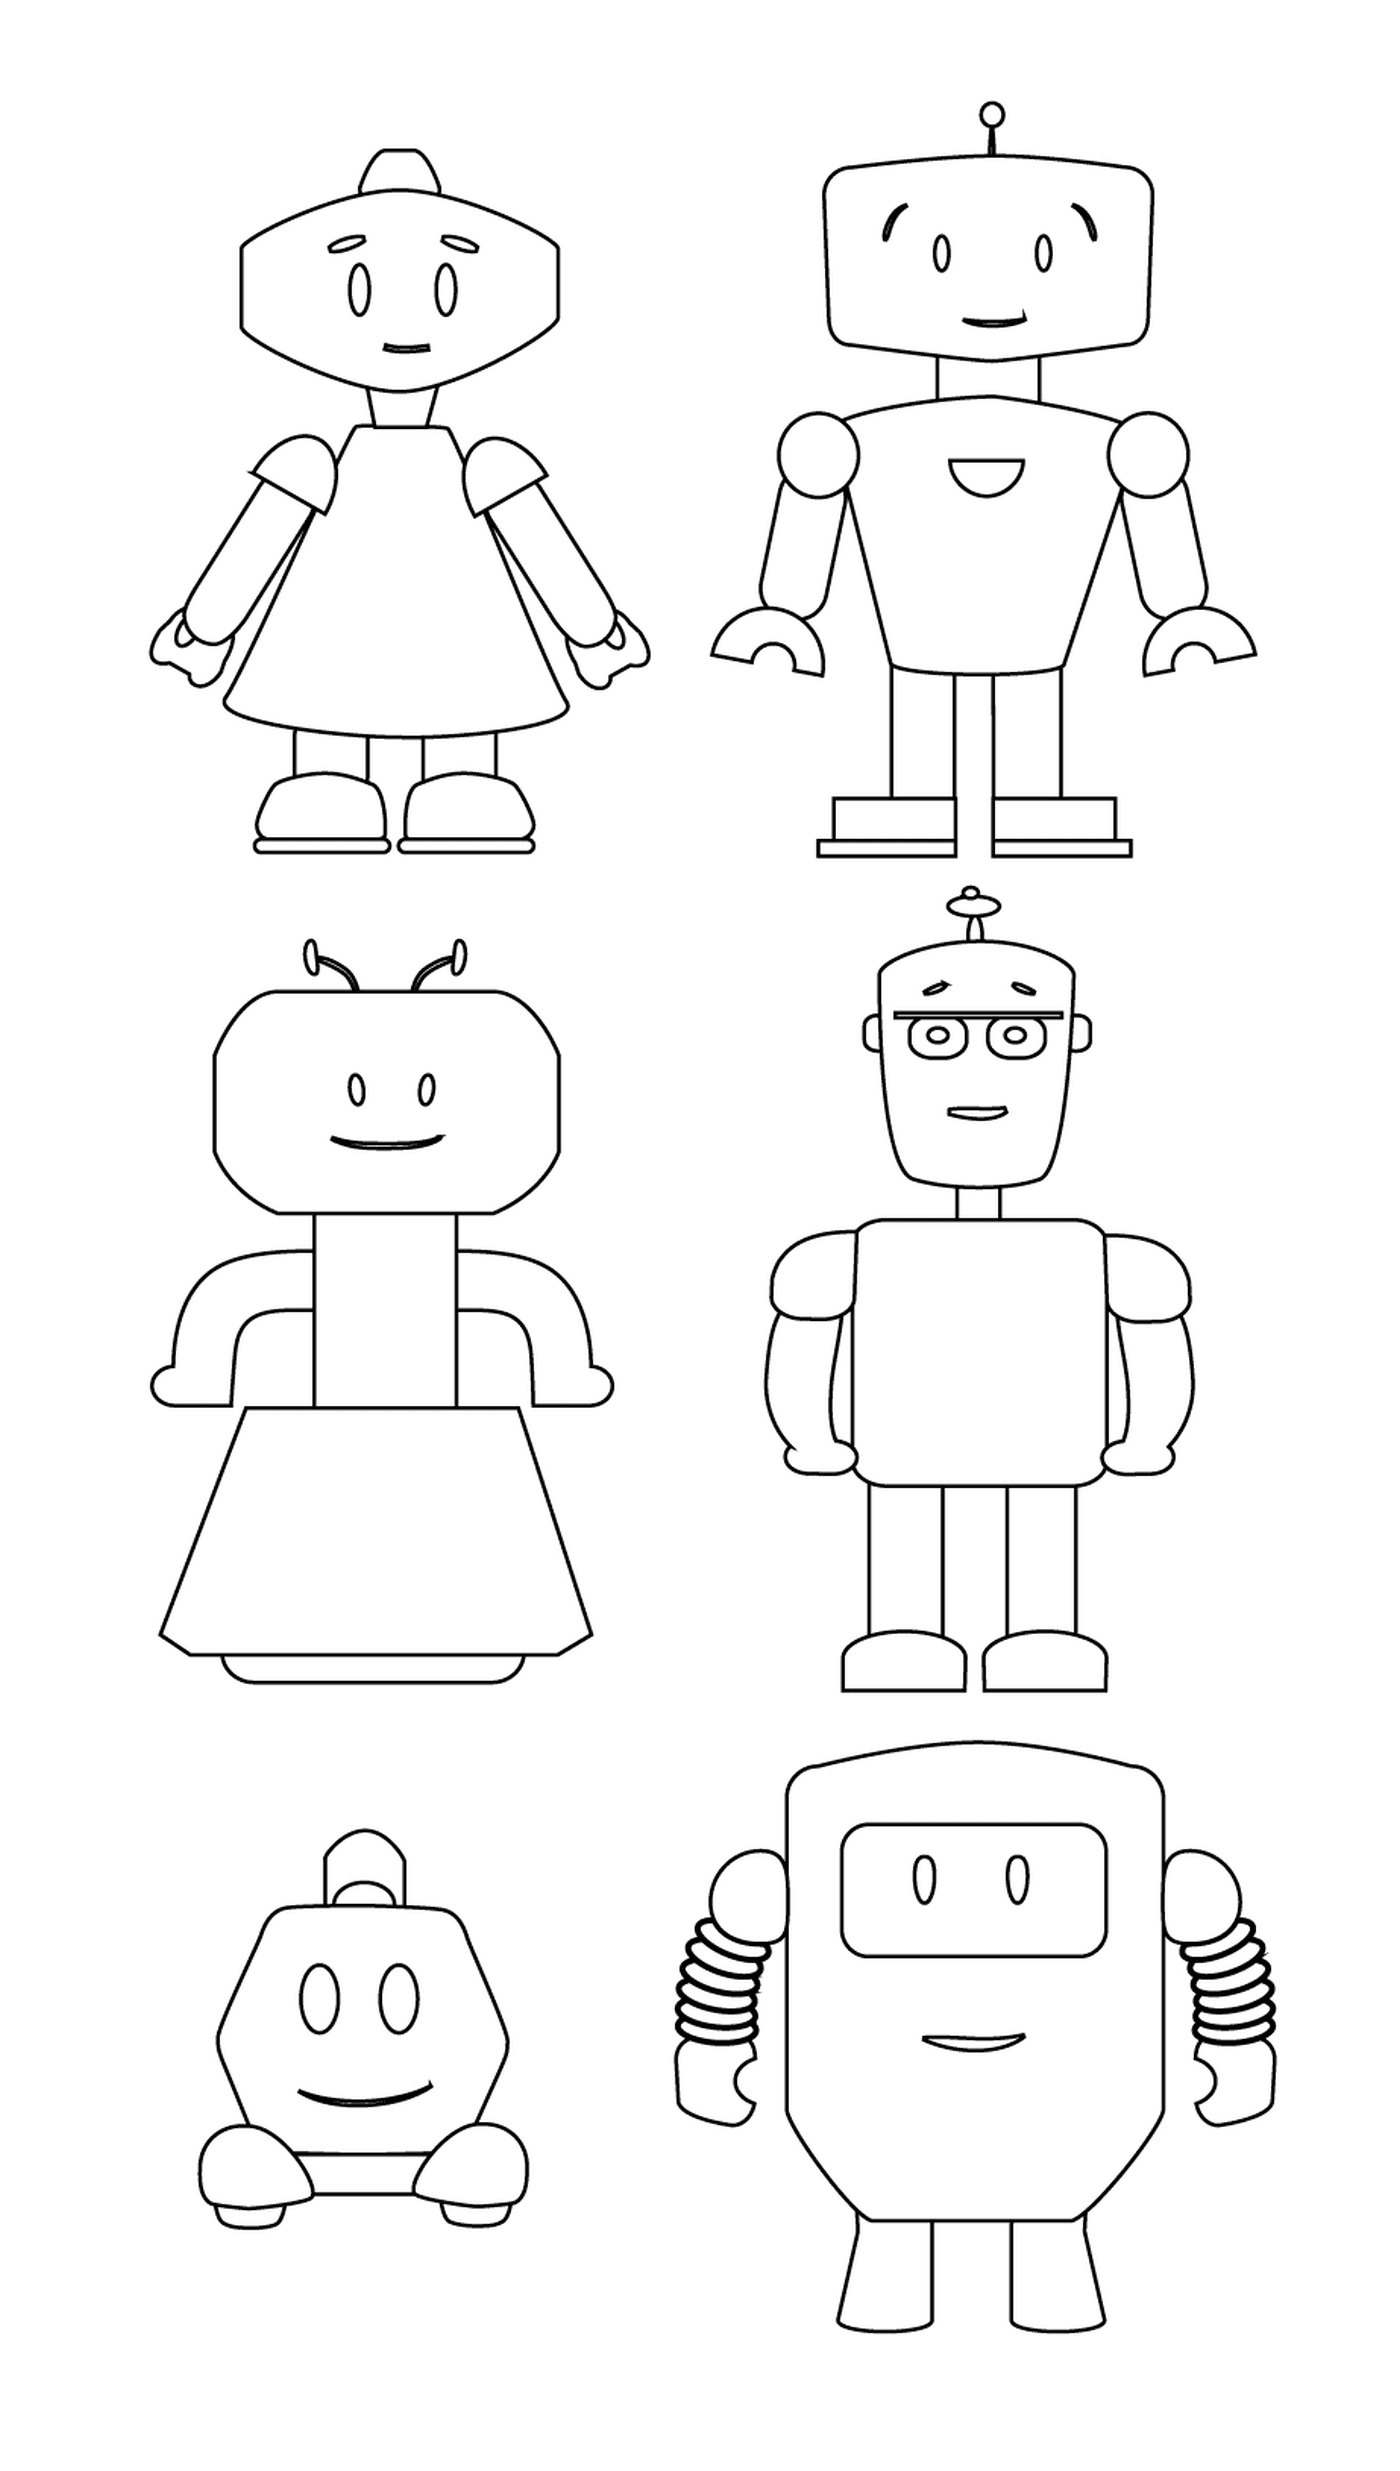  Família de robôs adoráveis 